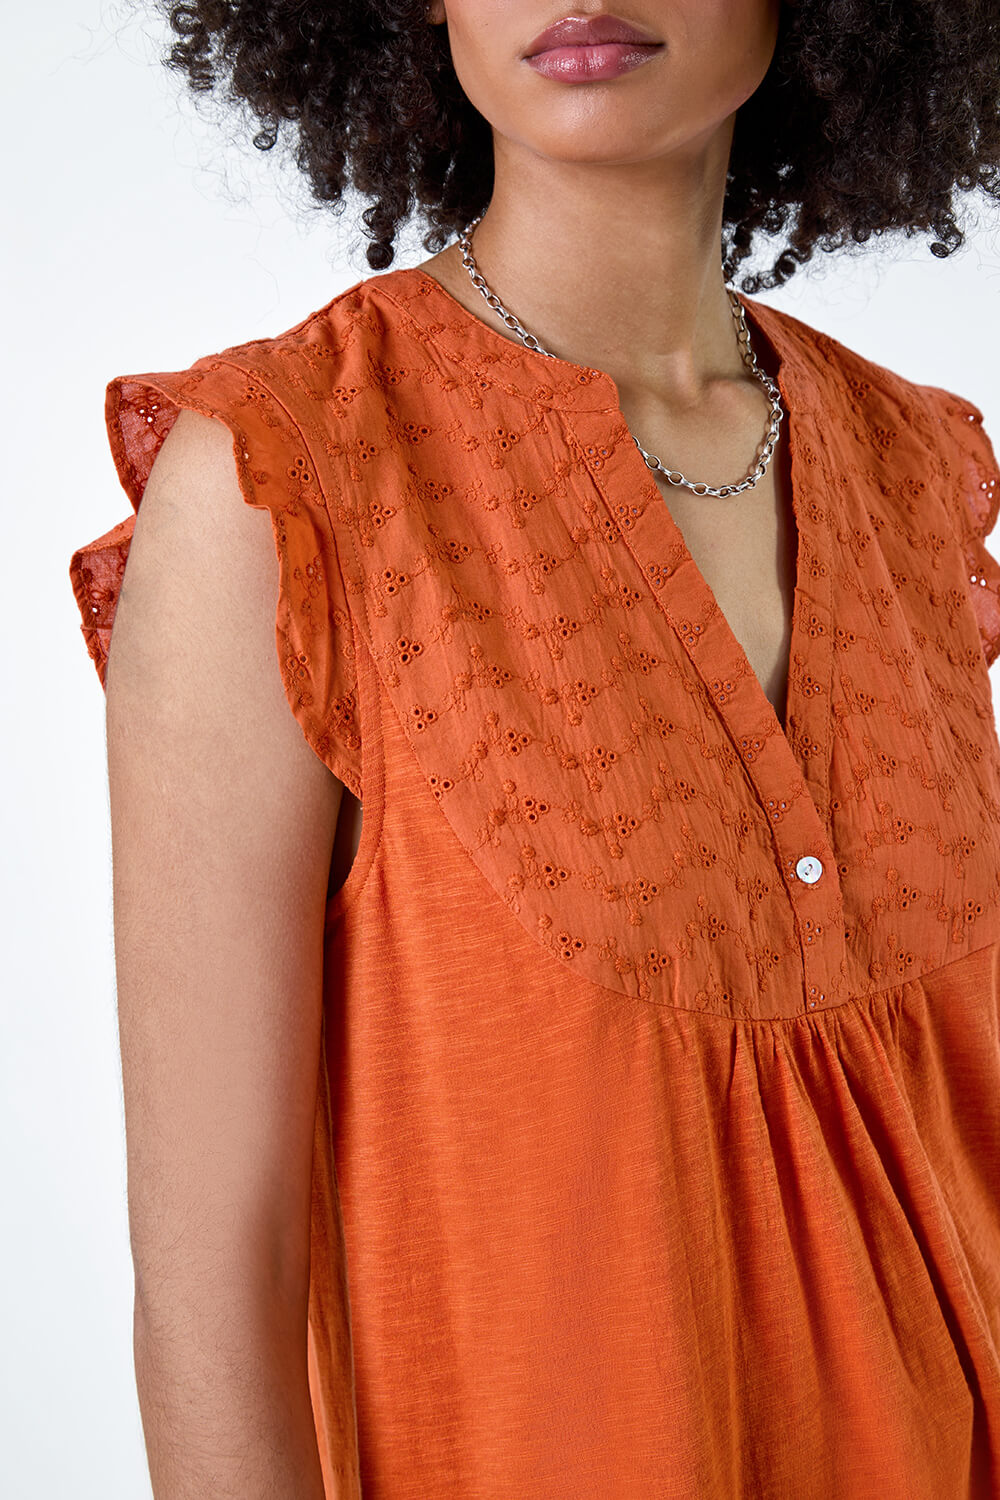 ORANGE Embroidered Frill Cotton Blend V-Neck Vest Top, Image 5 of 5